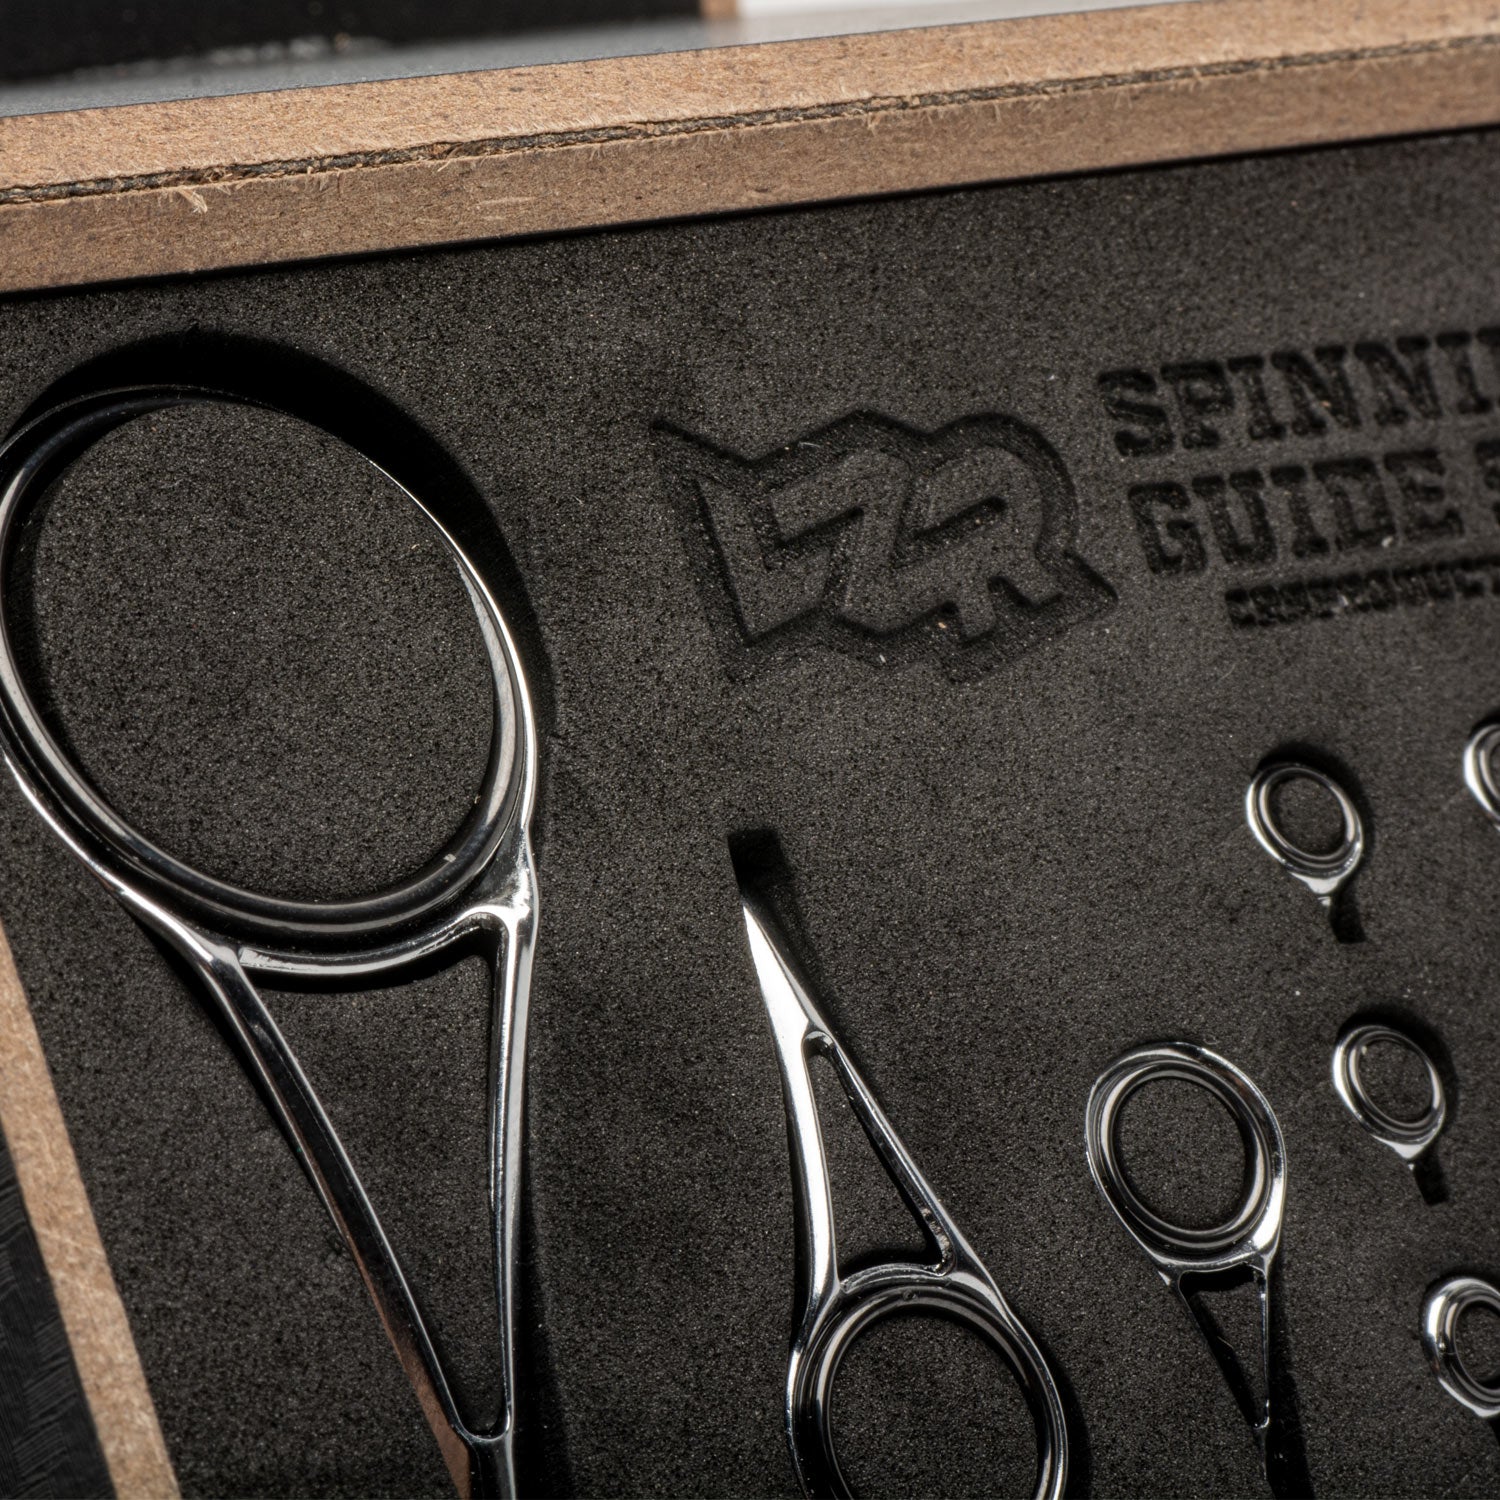 LZR Medium-Duty Spinning Rod Guide Kits